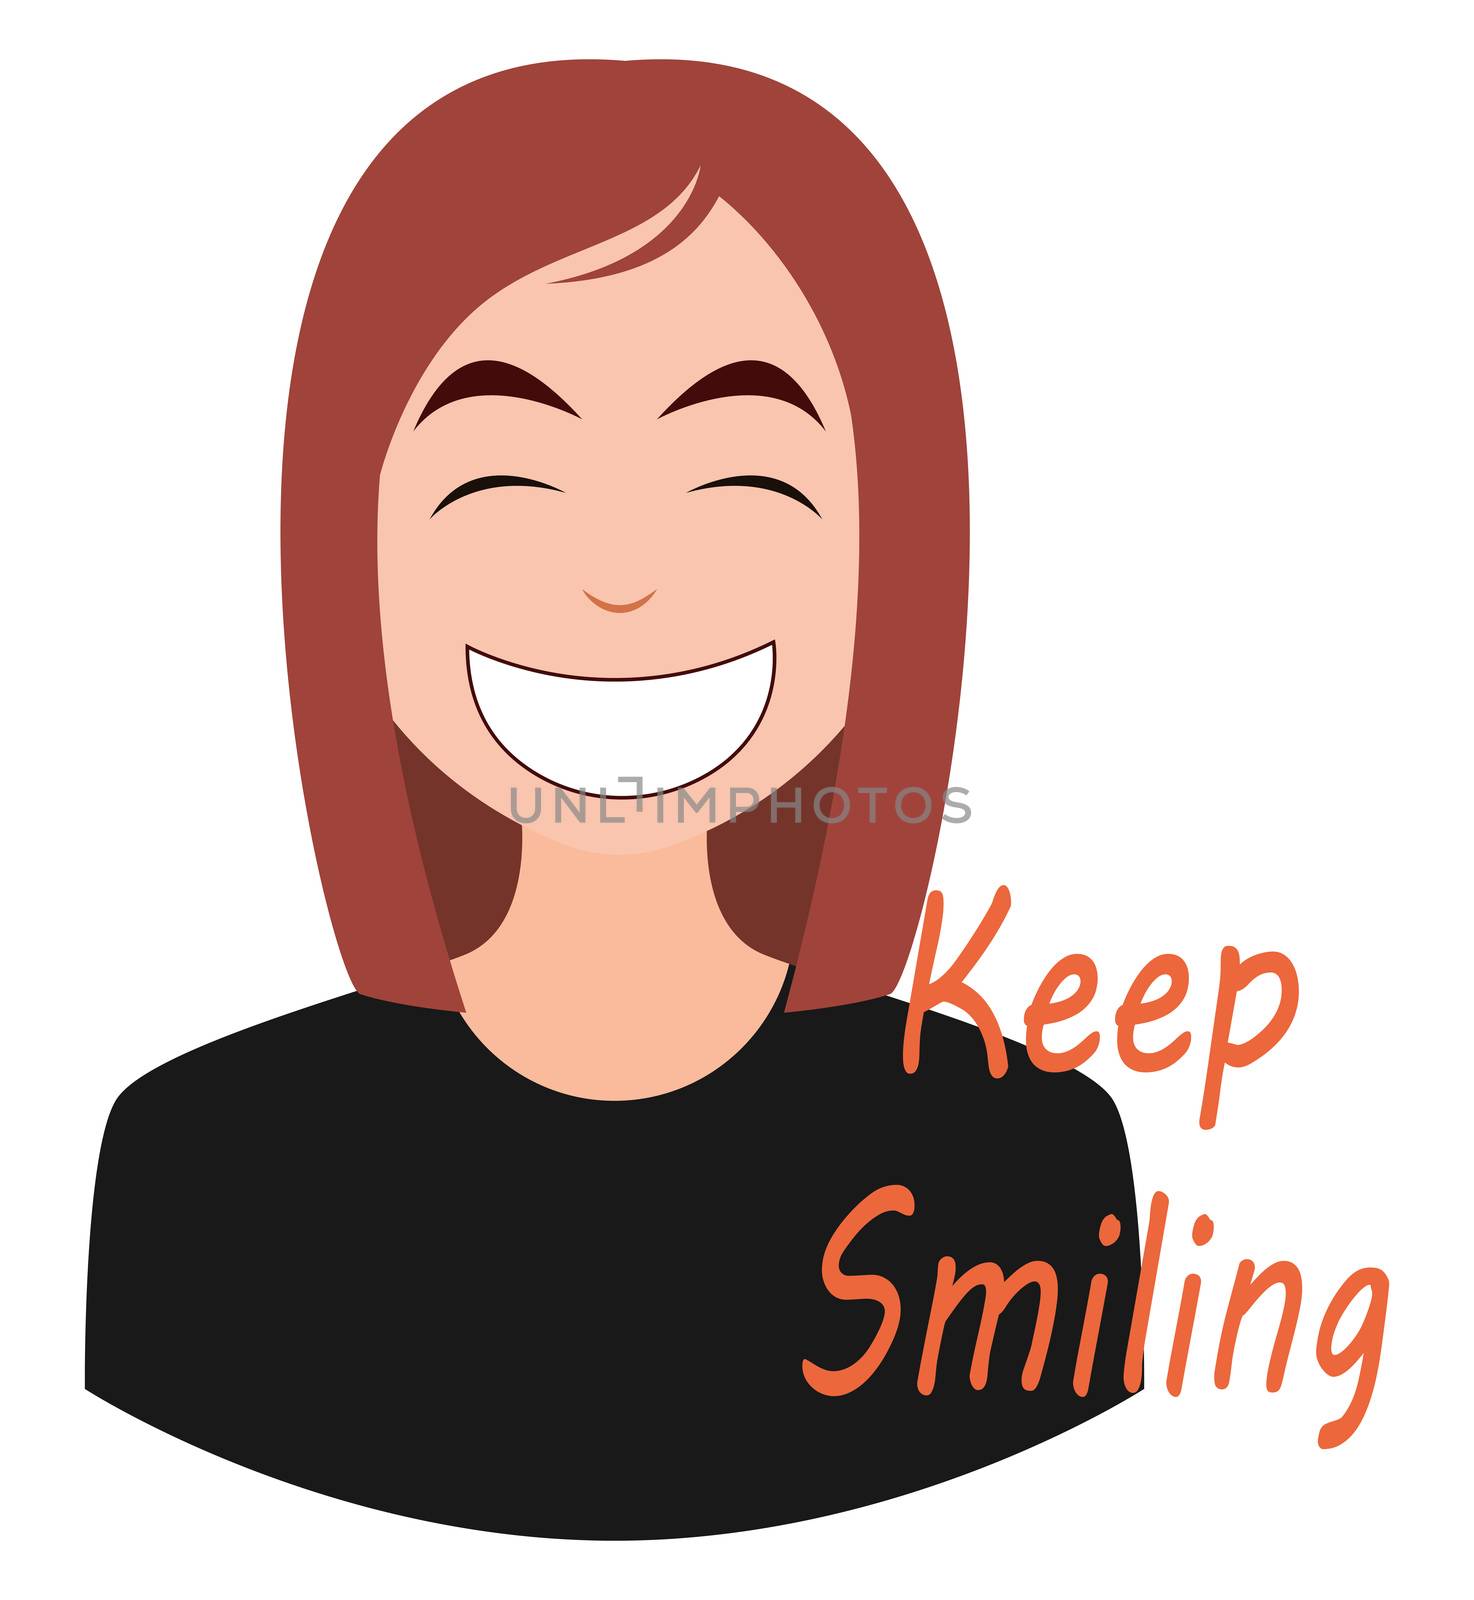 Smiling girl emoji, illustration, vector on white background by Morphart